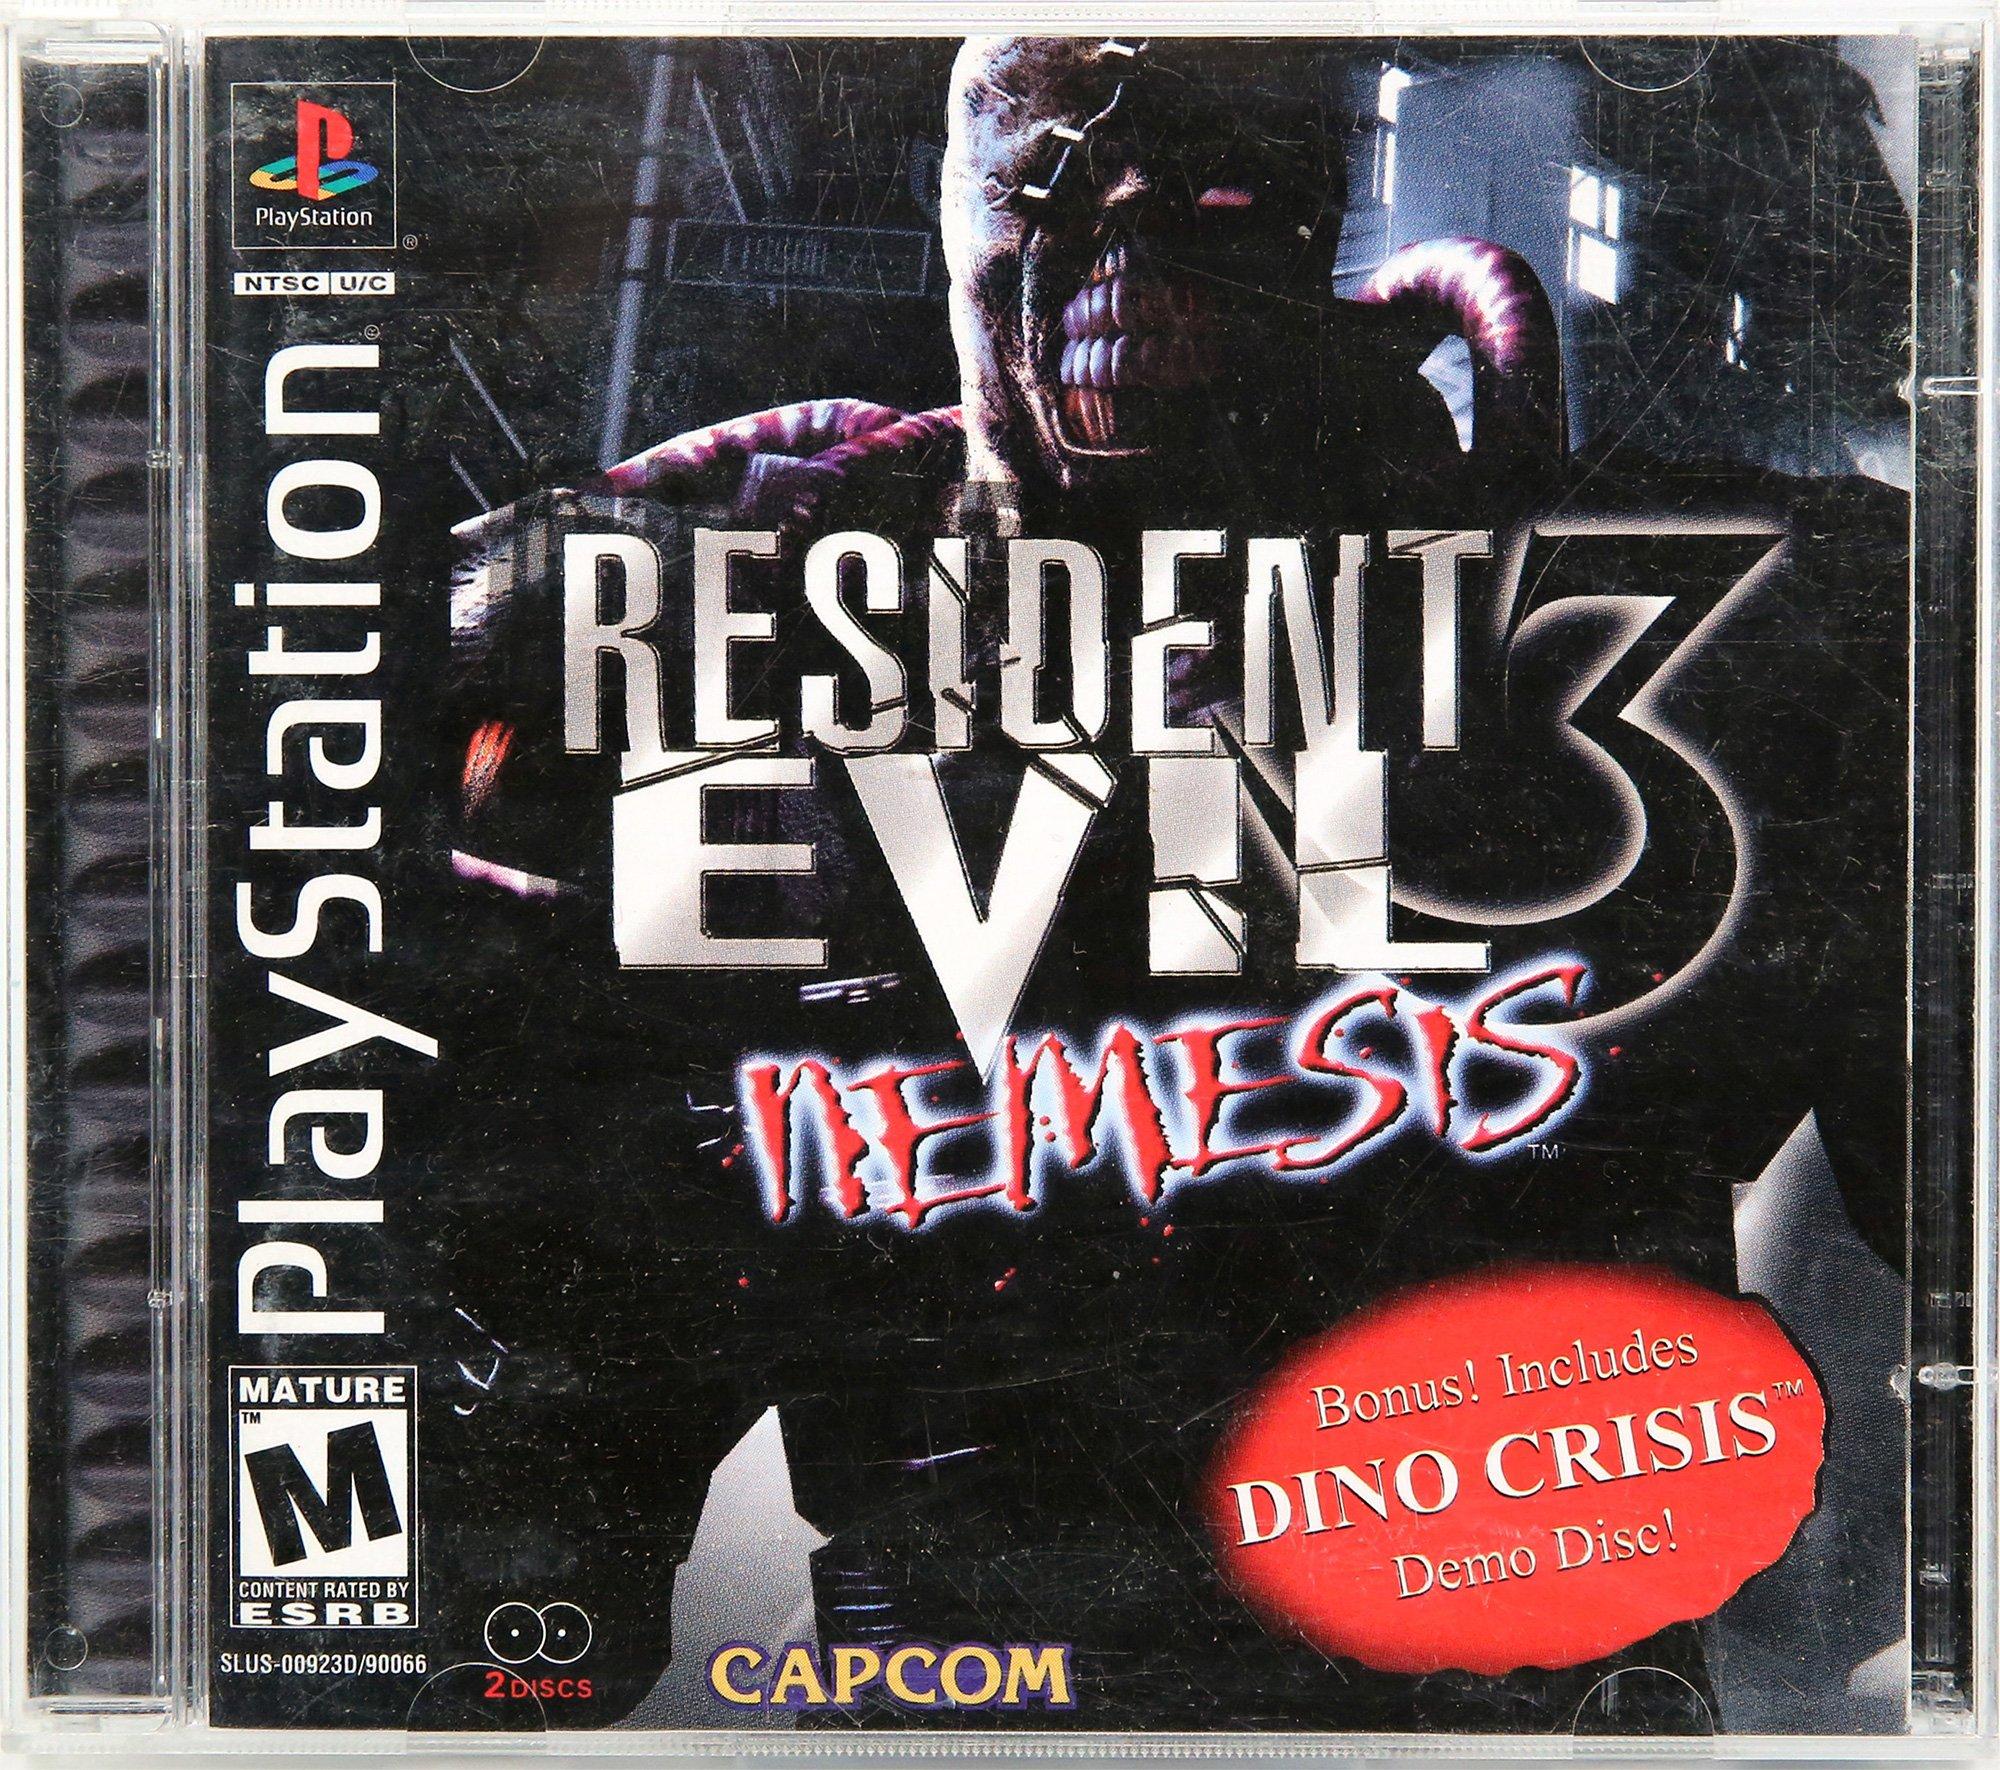 Resident Evil 3